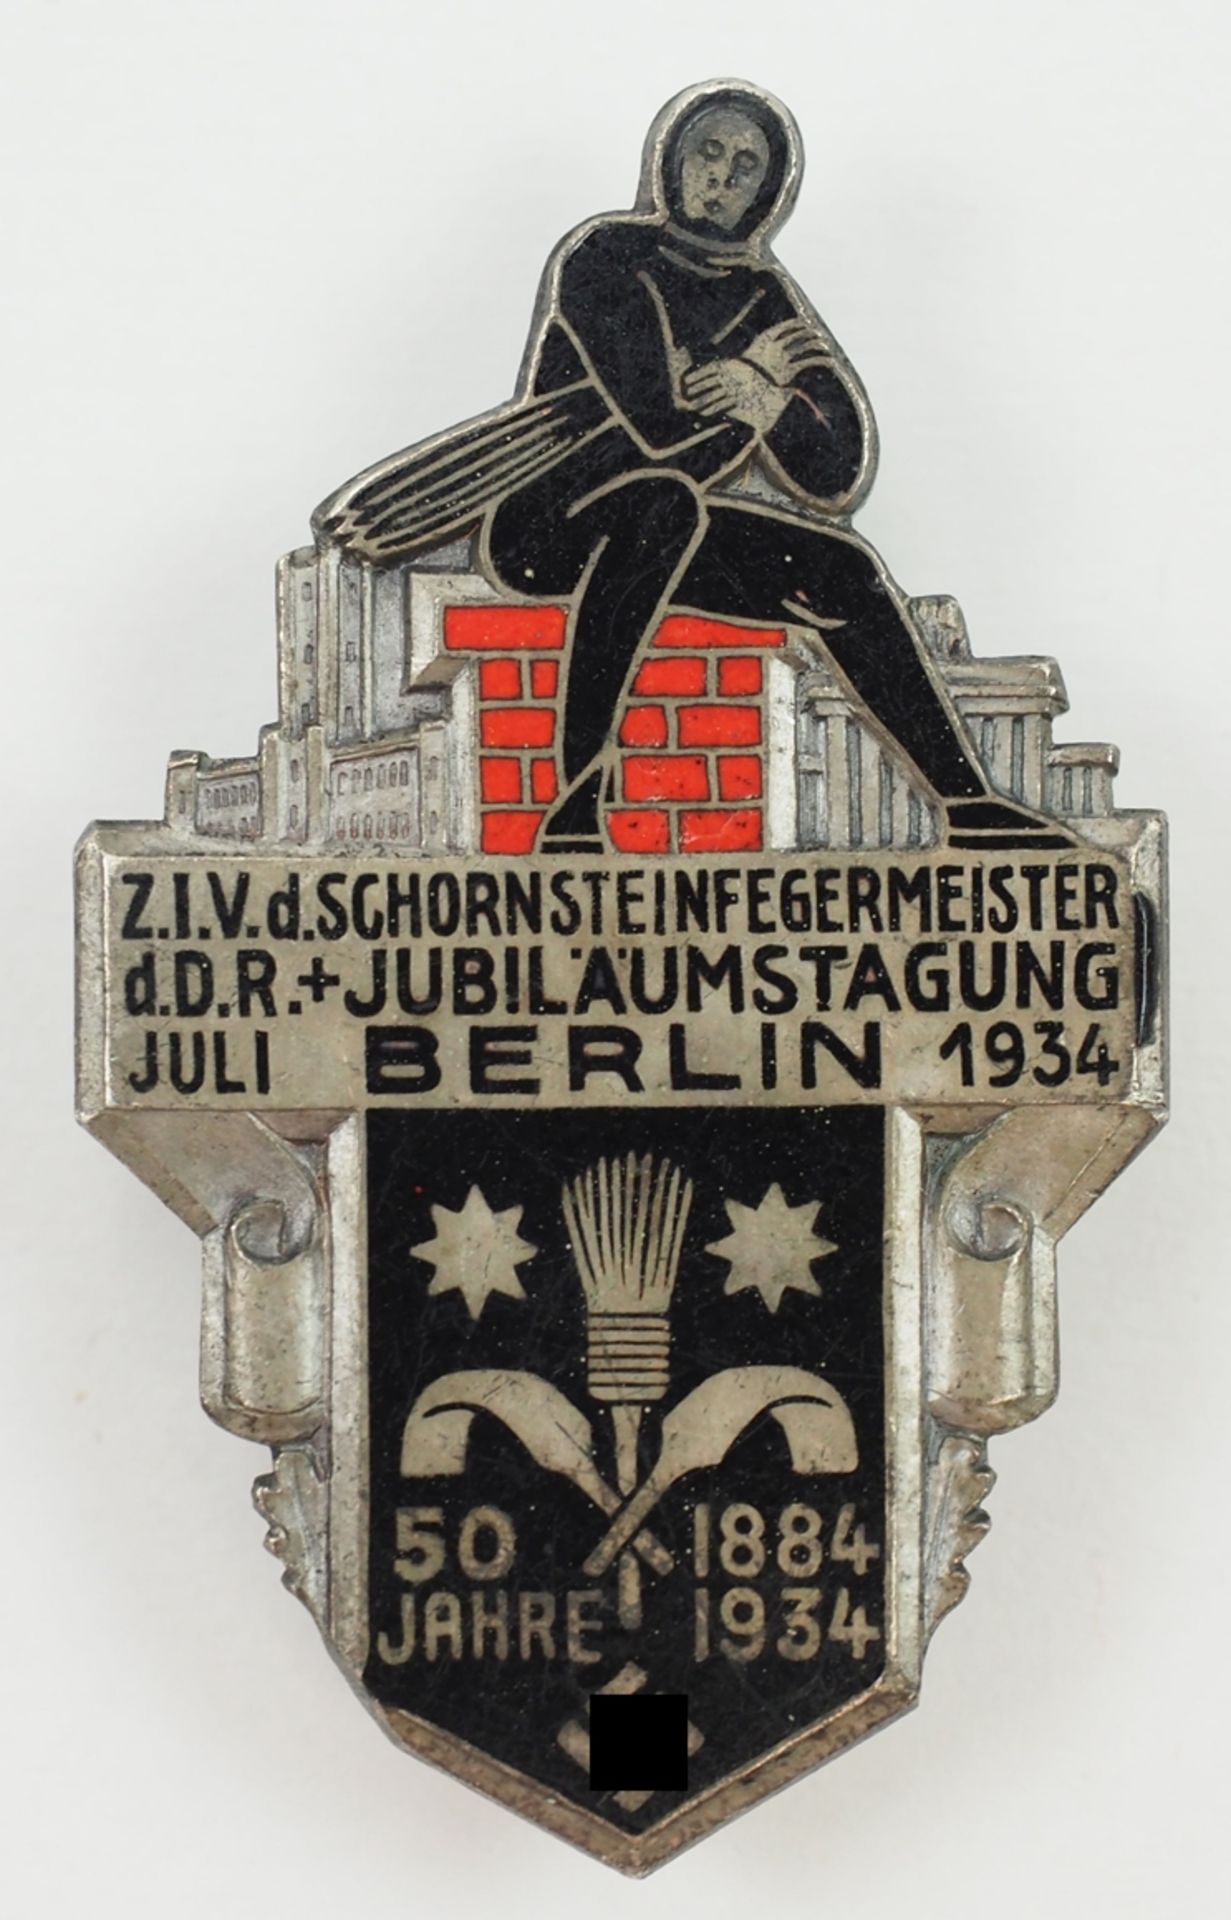 Abzeichen der Jubiläumstagung Z.I.V.d. Schornsteinfegermeister d.D.R. Berlin Juli 1934.